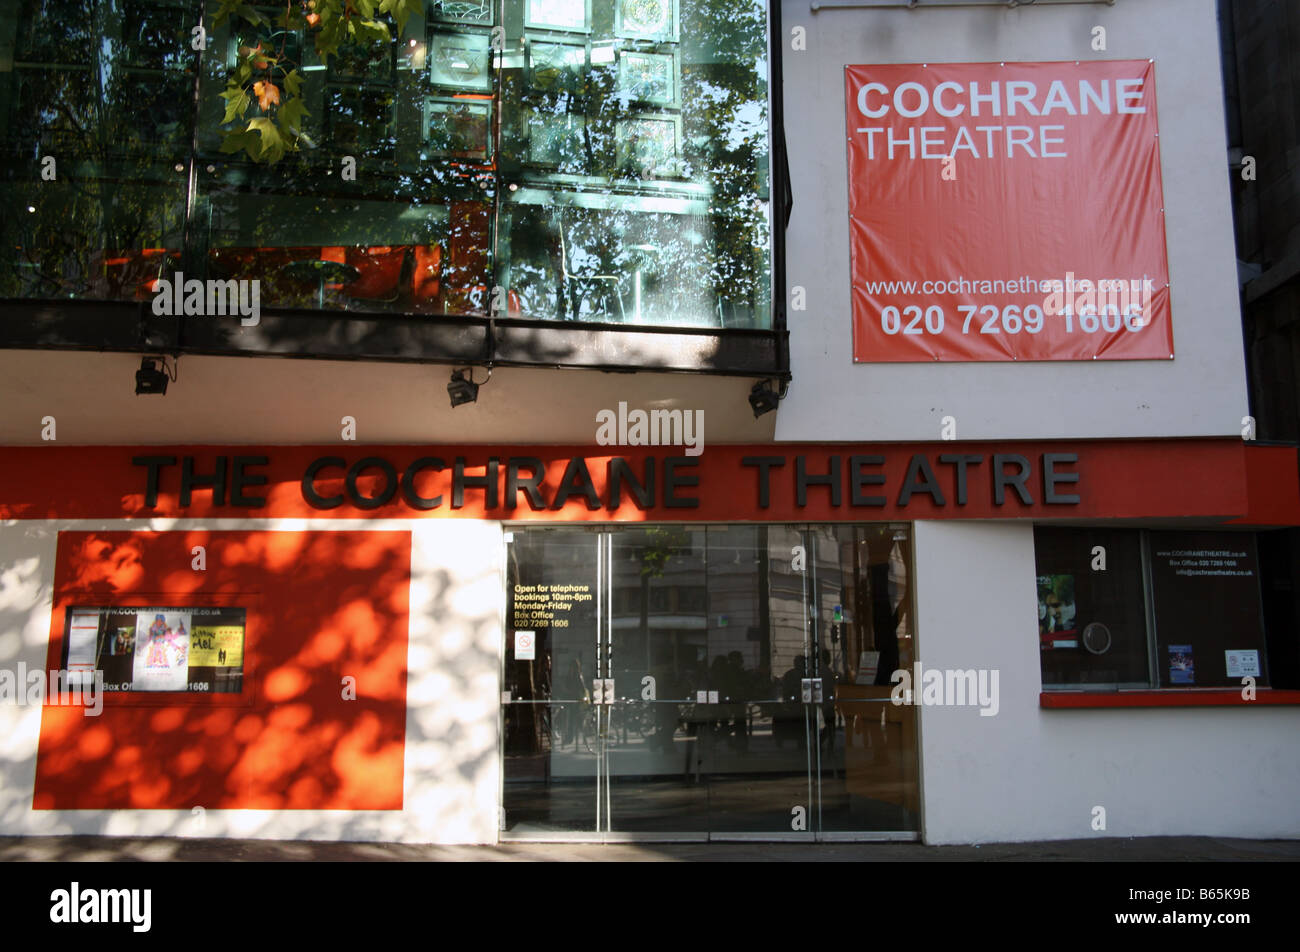 Cochrane Theatre, London Stock Photo